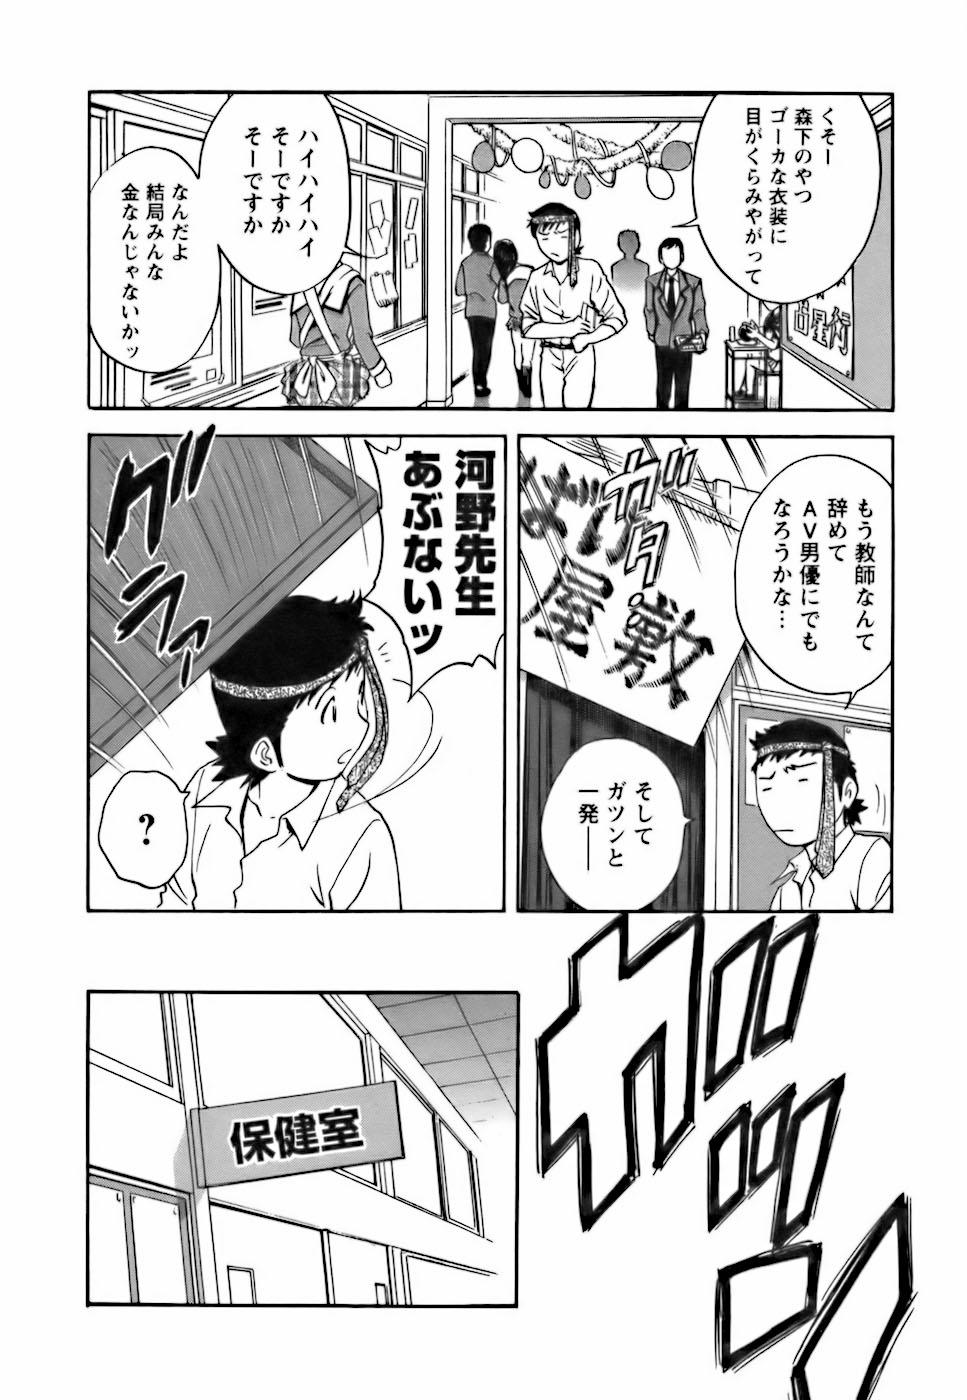 [Hidemaru] Mo-Retsu! Boin Sensei (Boing Boing Teacher) Vol.3 113